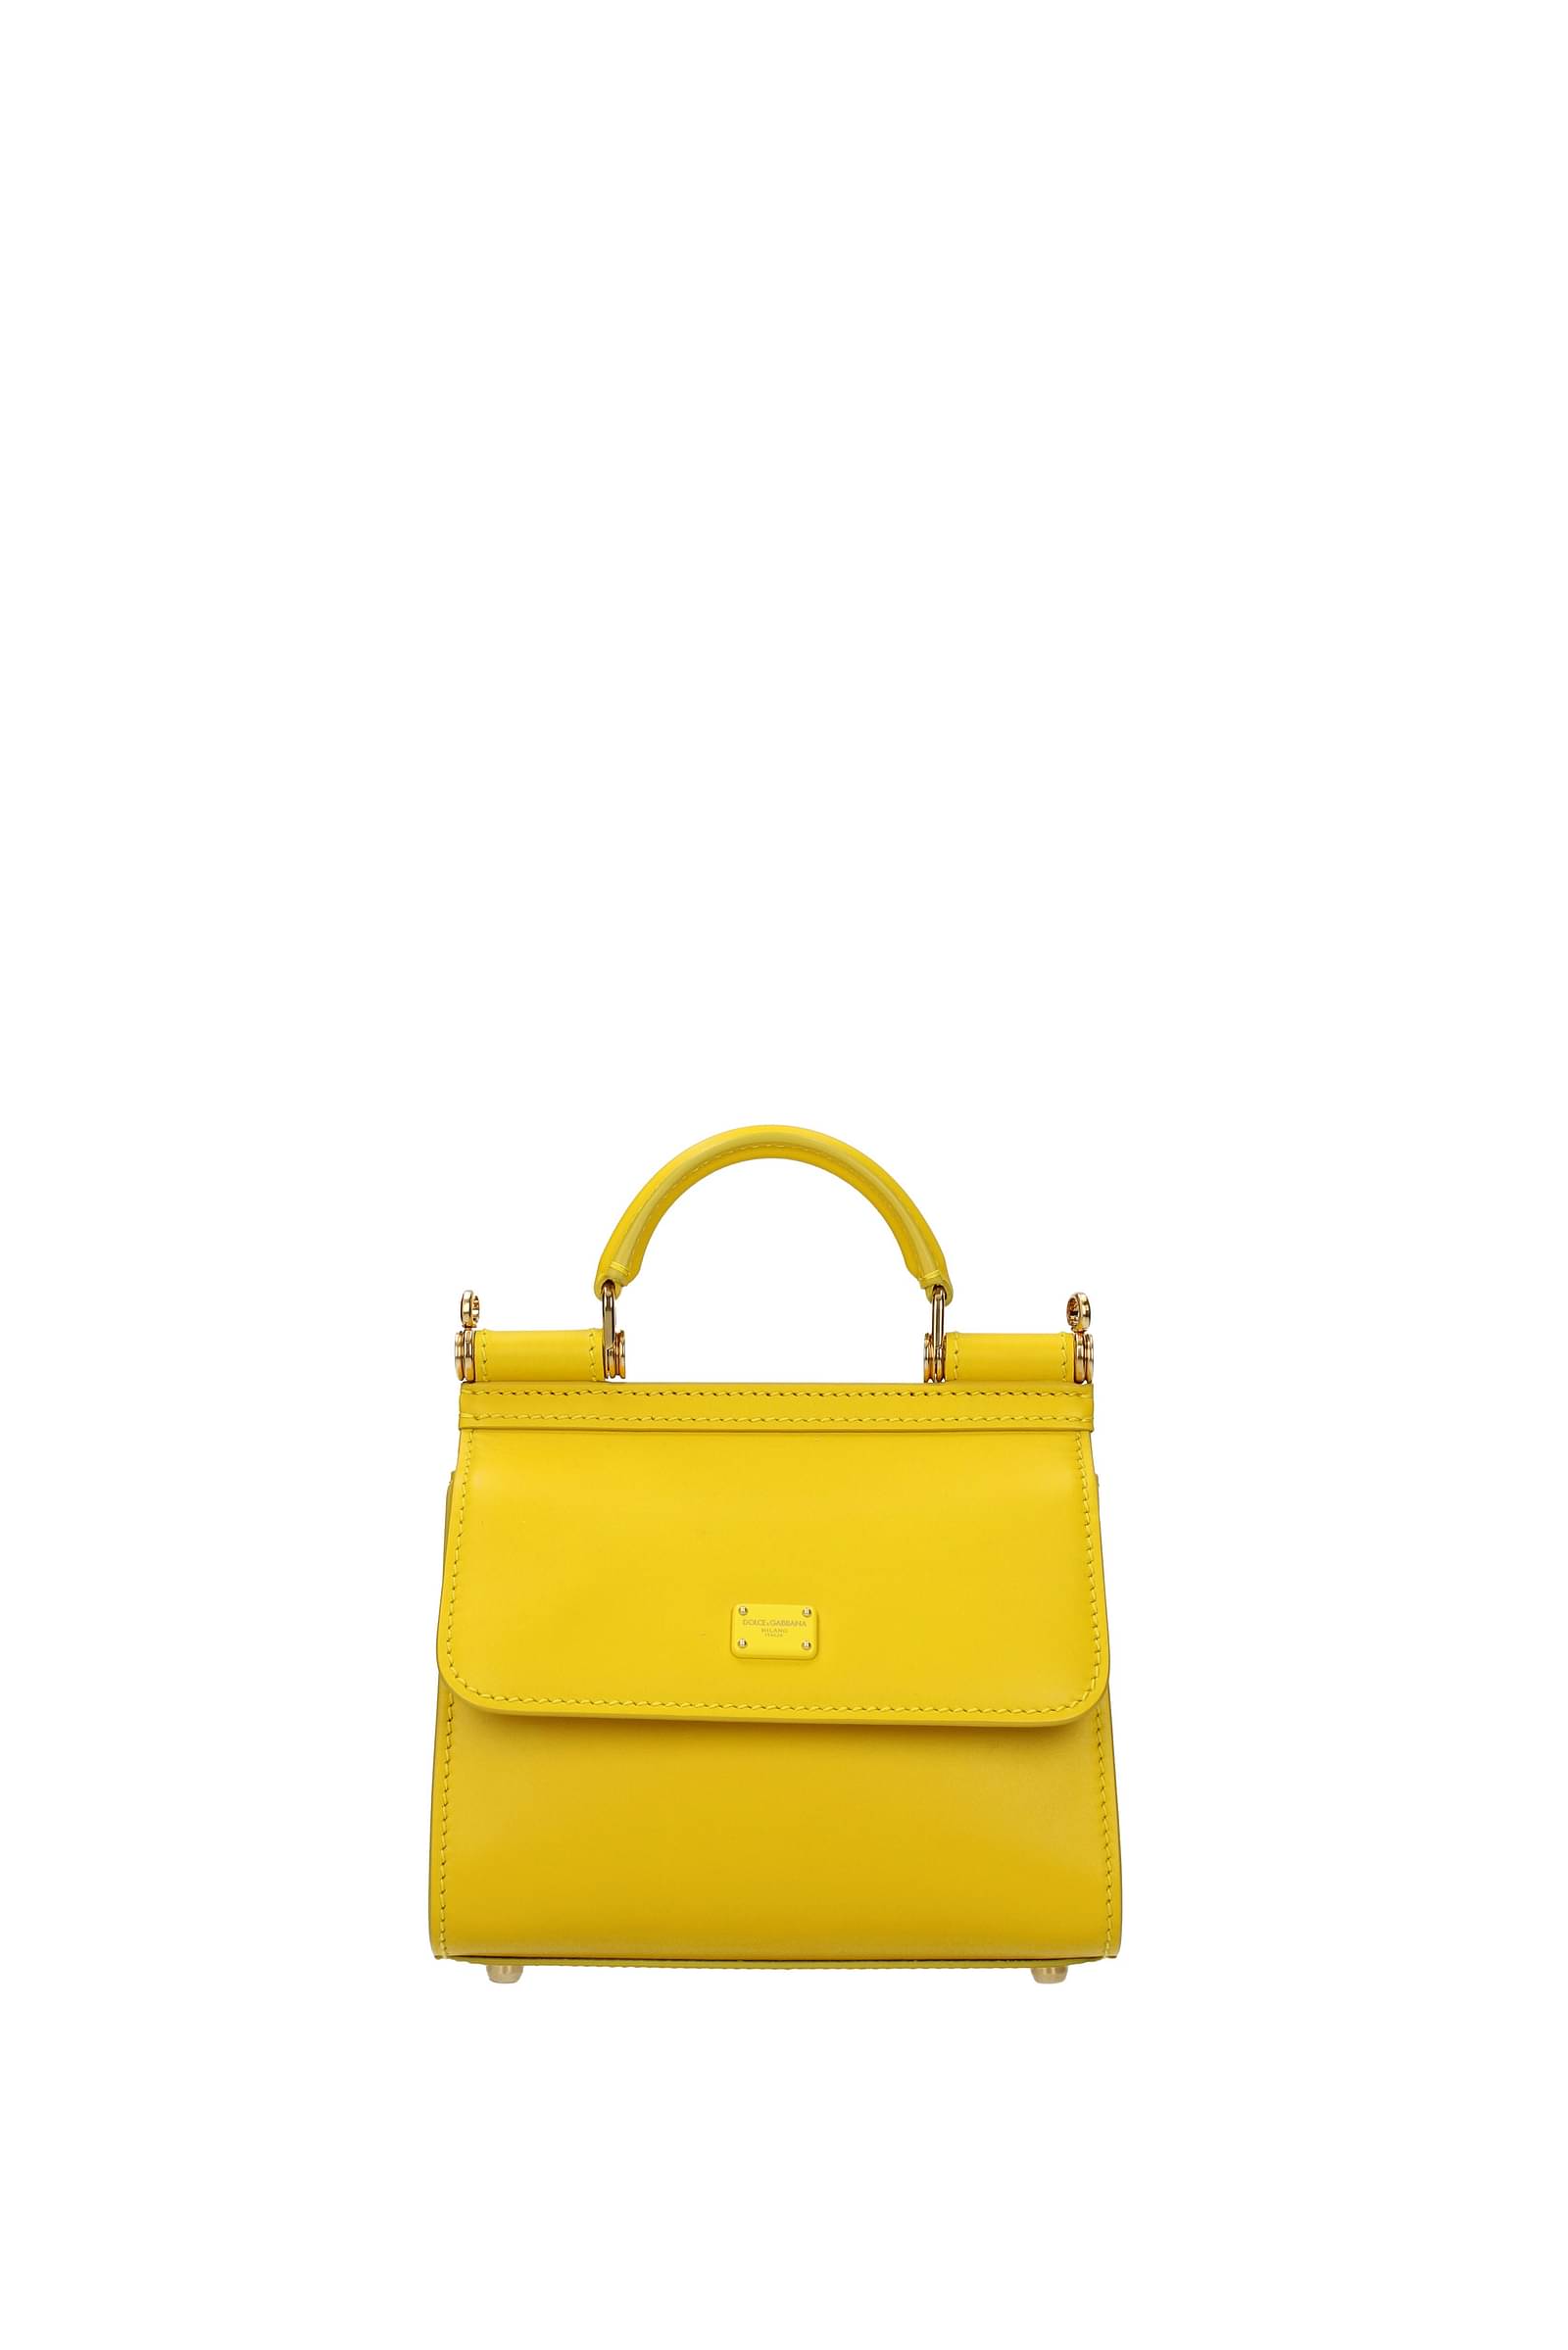 Handbags Dolce&Gabbana sicily 58 mini Women - Leather (BB6846AV385) | eBay